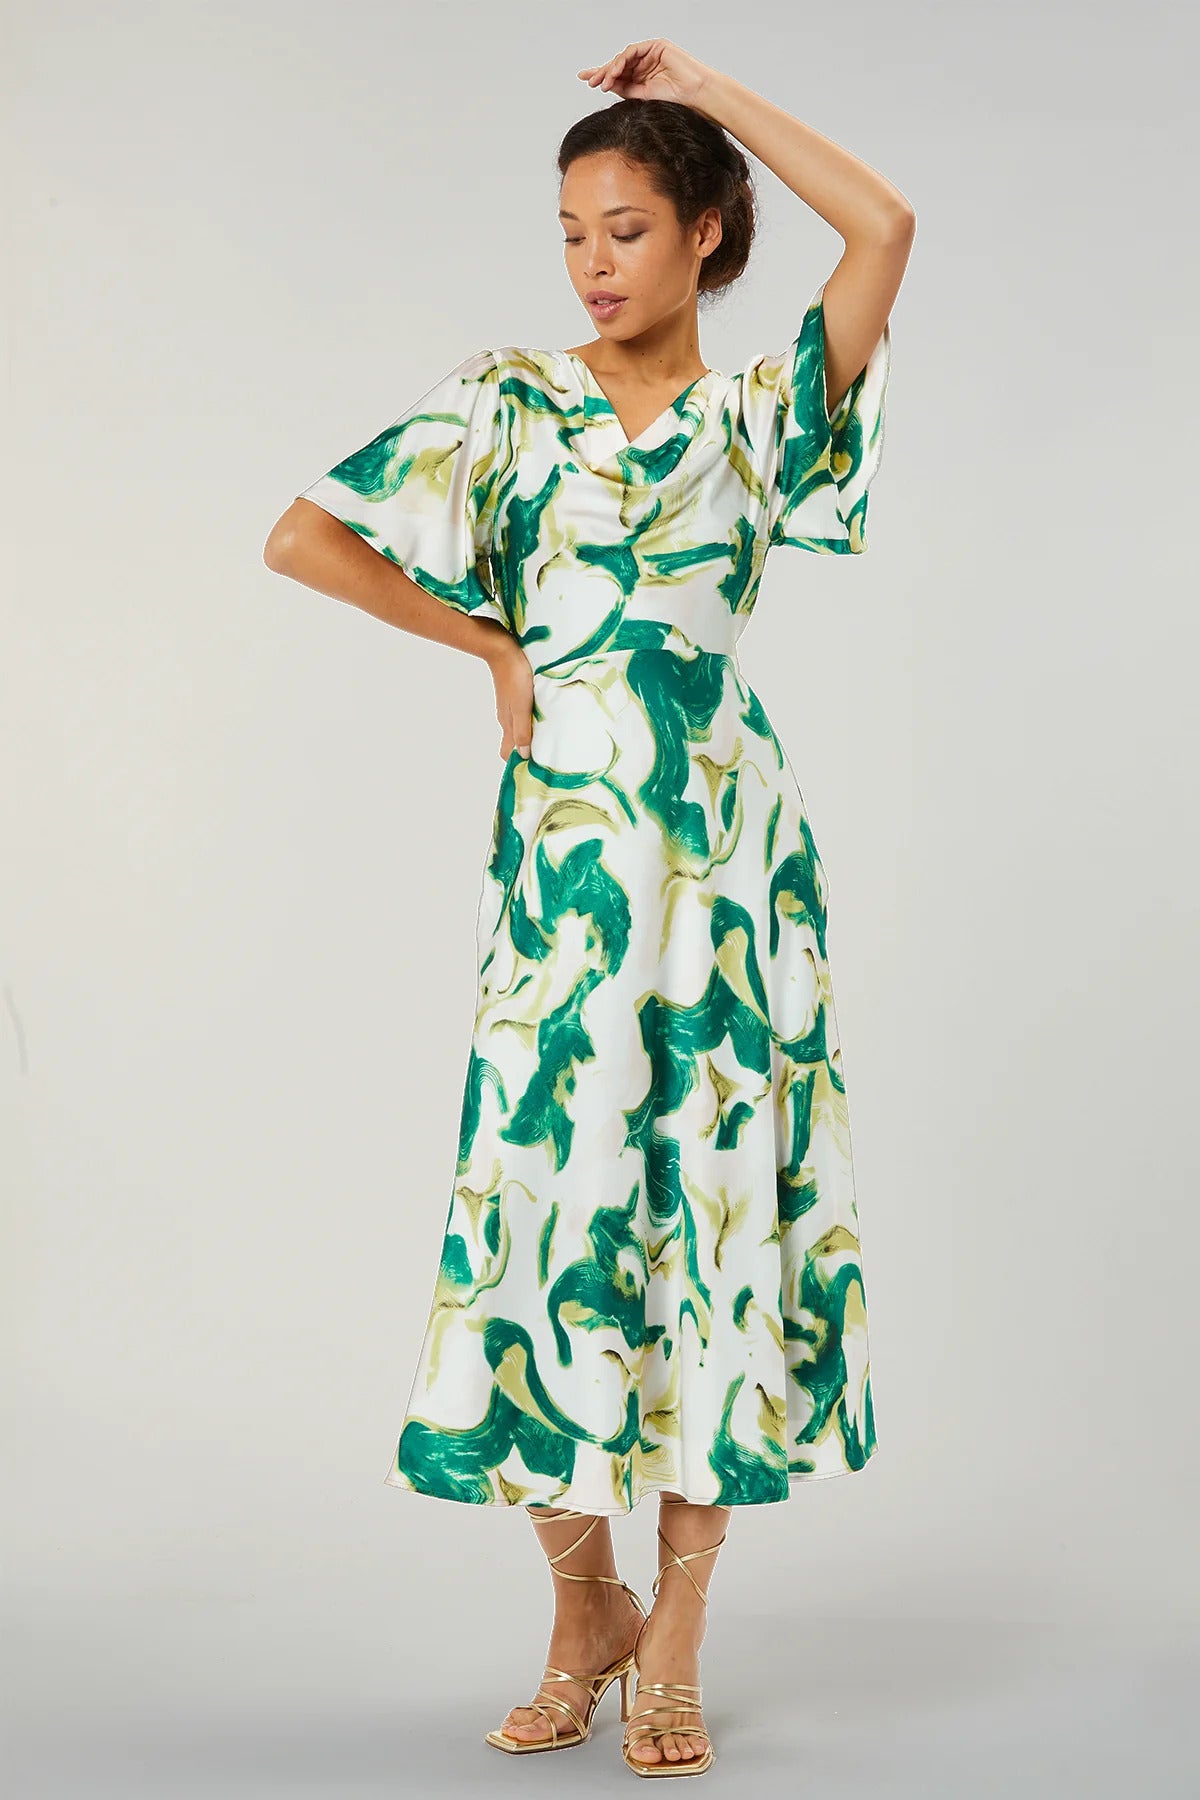 Zibi London - Mimi Print Dress - 9020701